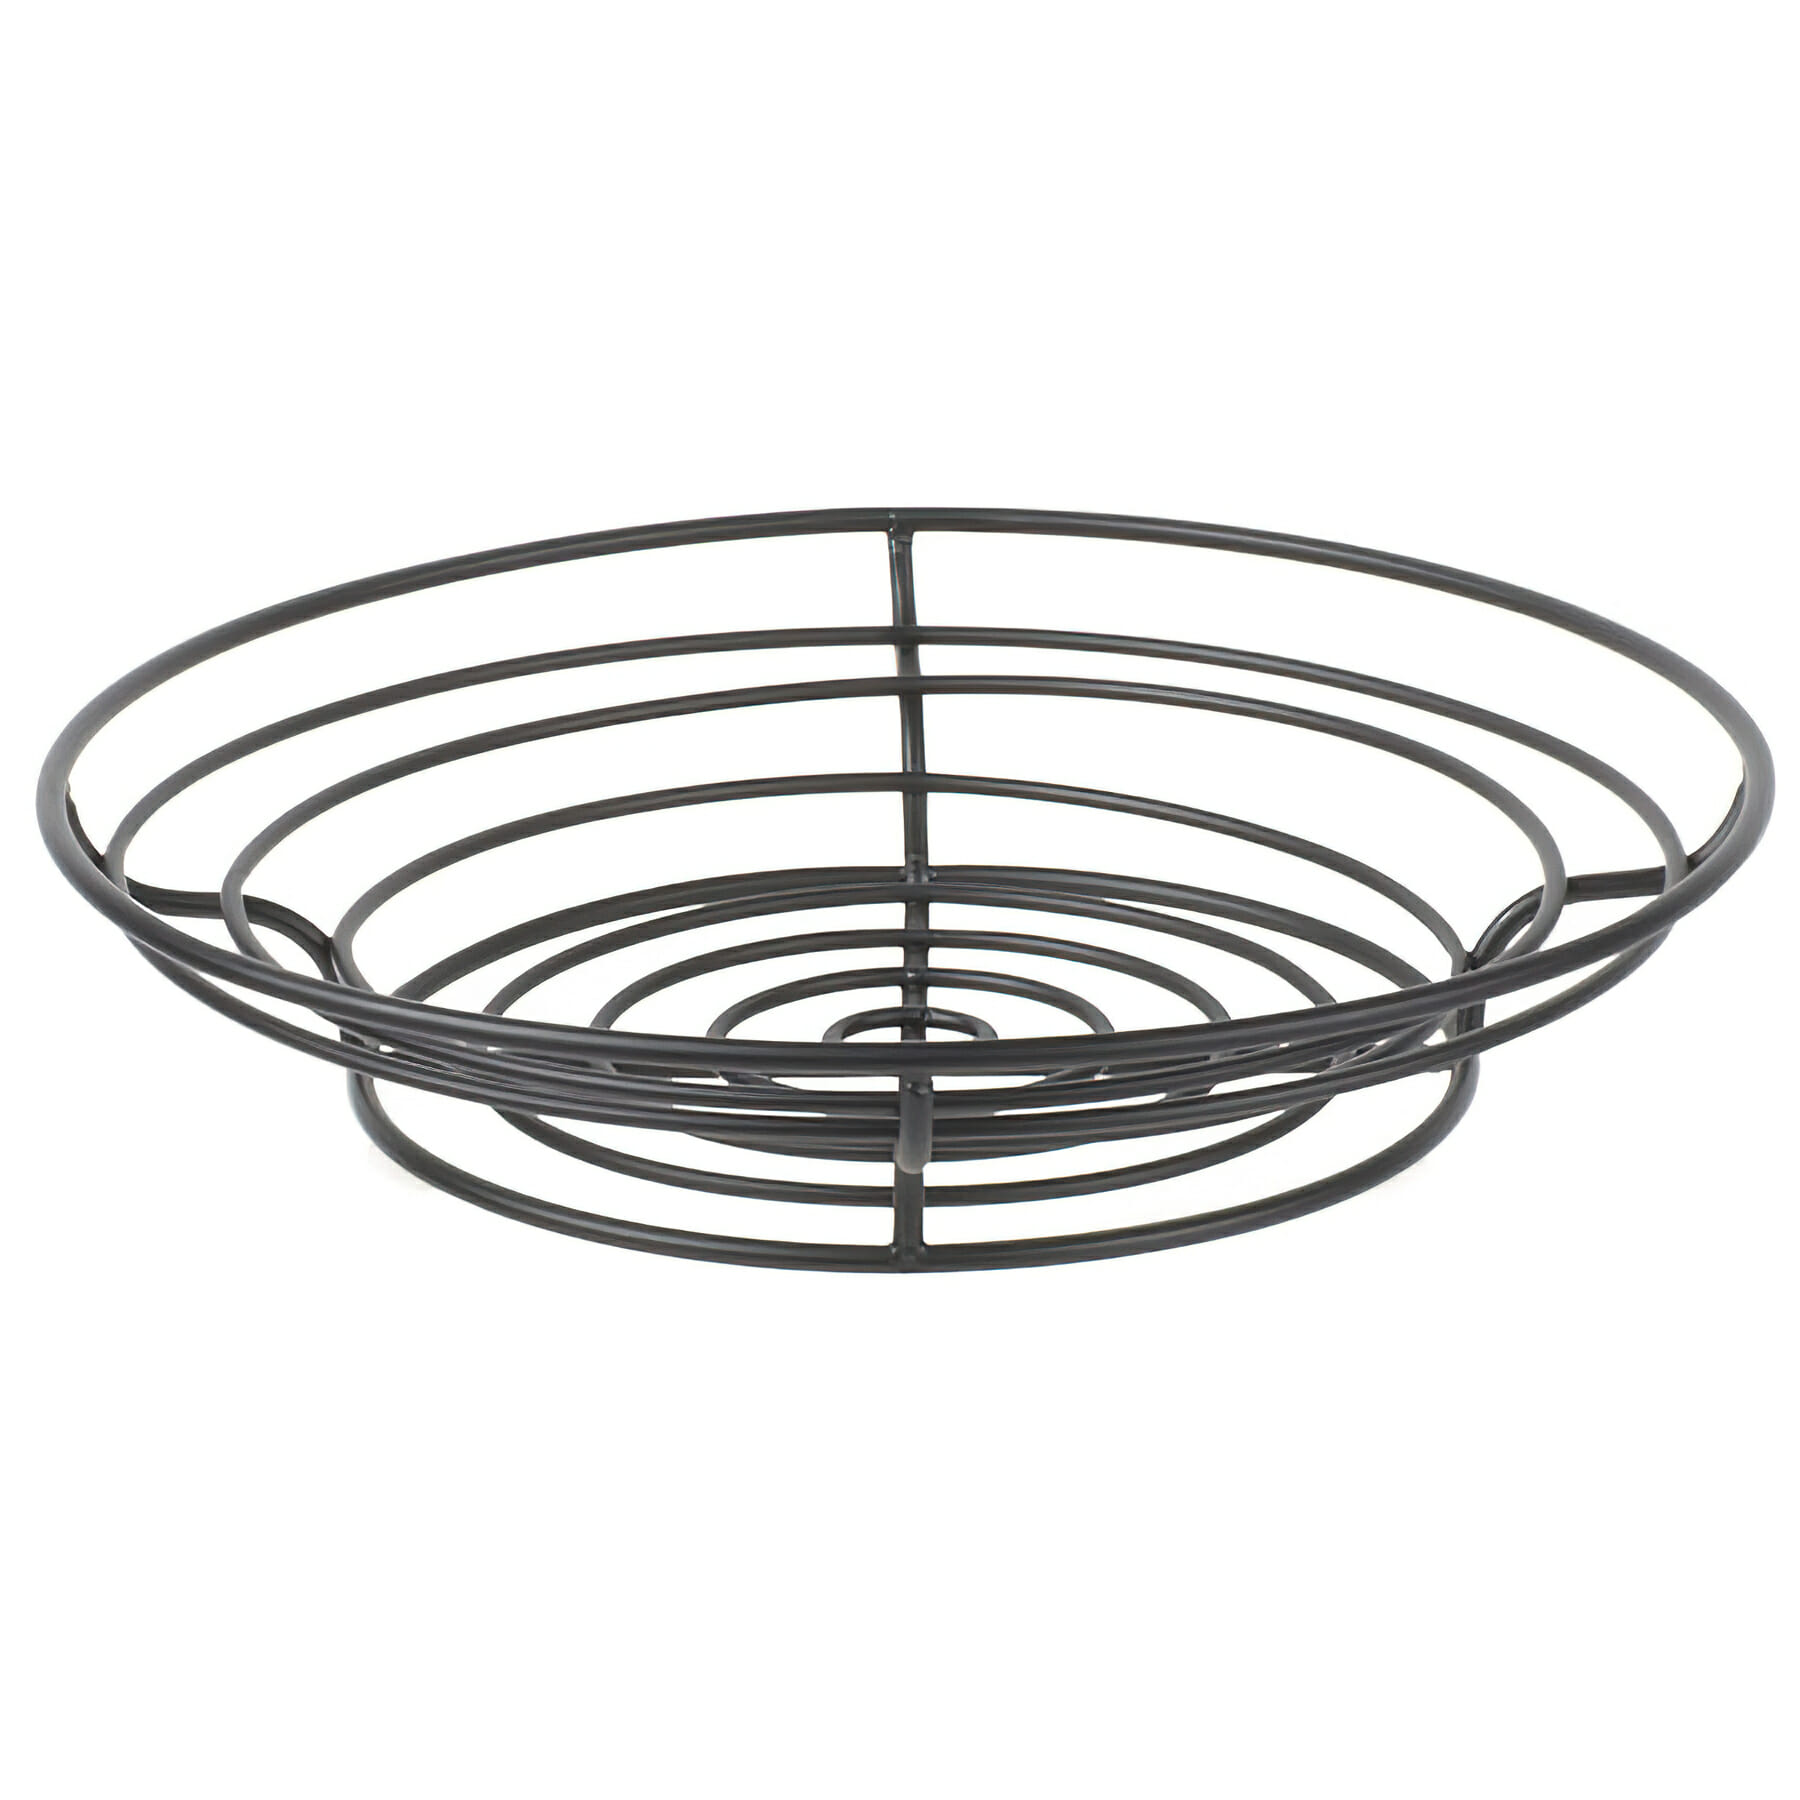 15" Round Black Wire Basket, 3" Deep (fits IR-502B, IR-503B)